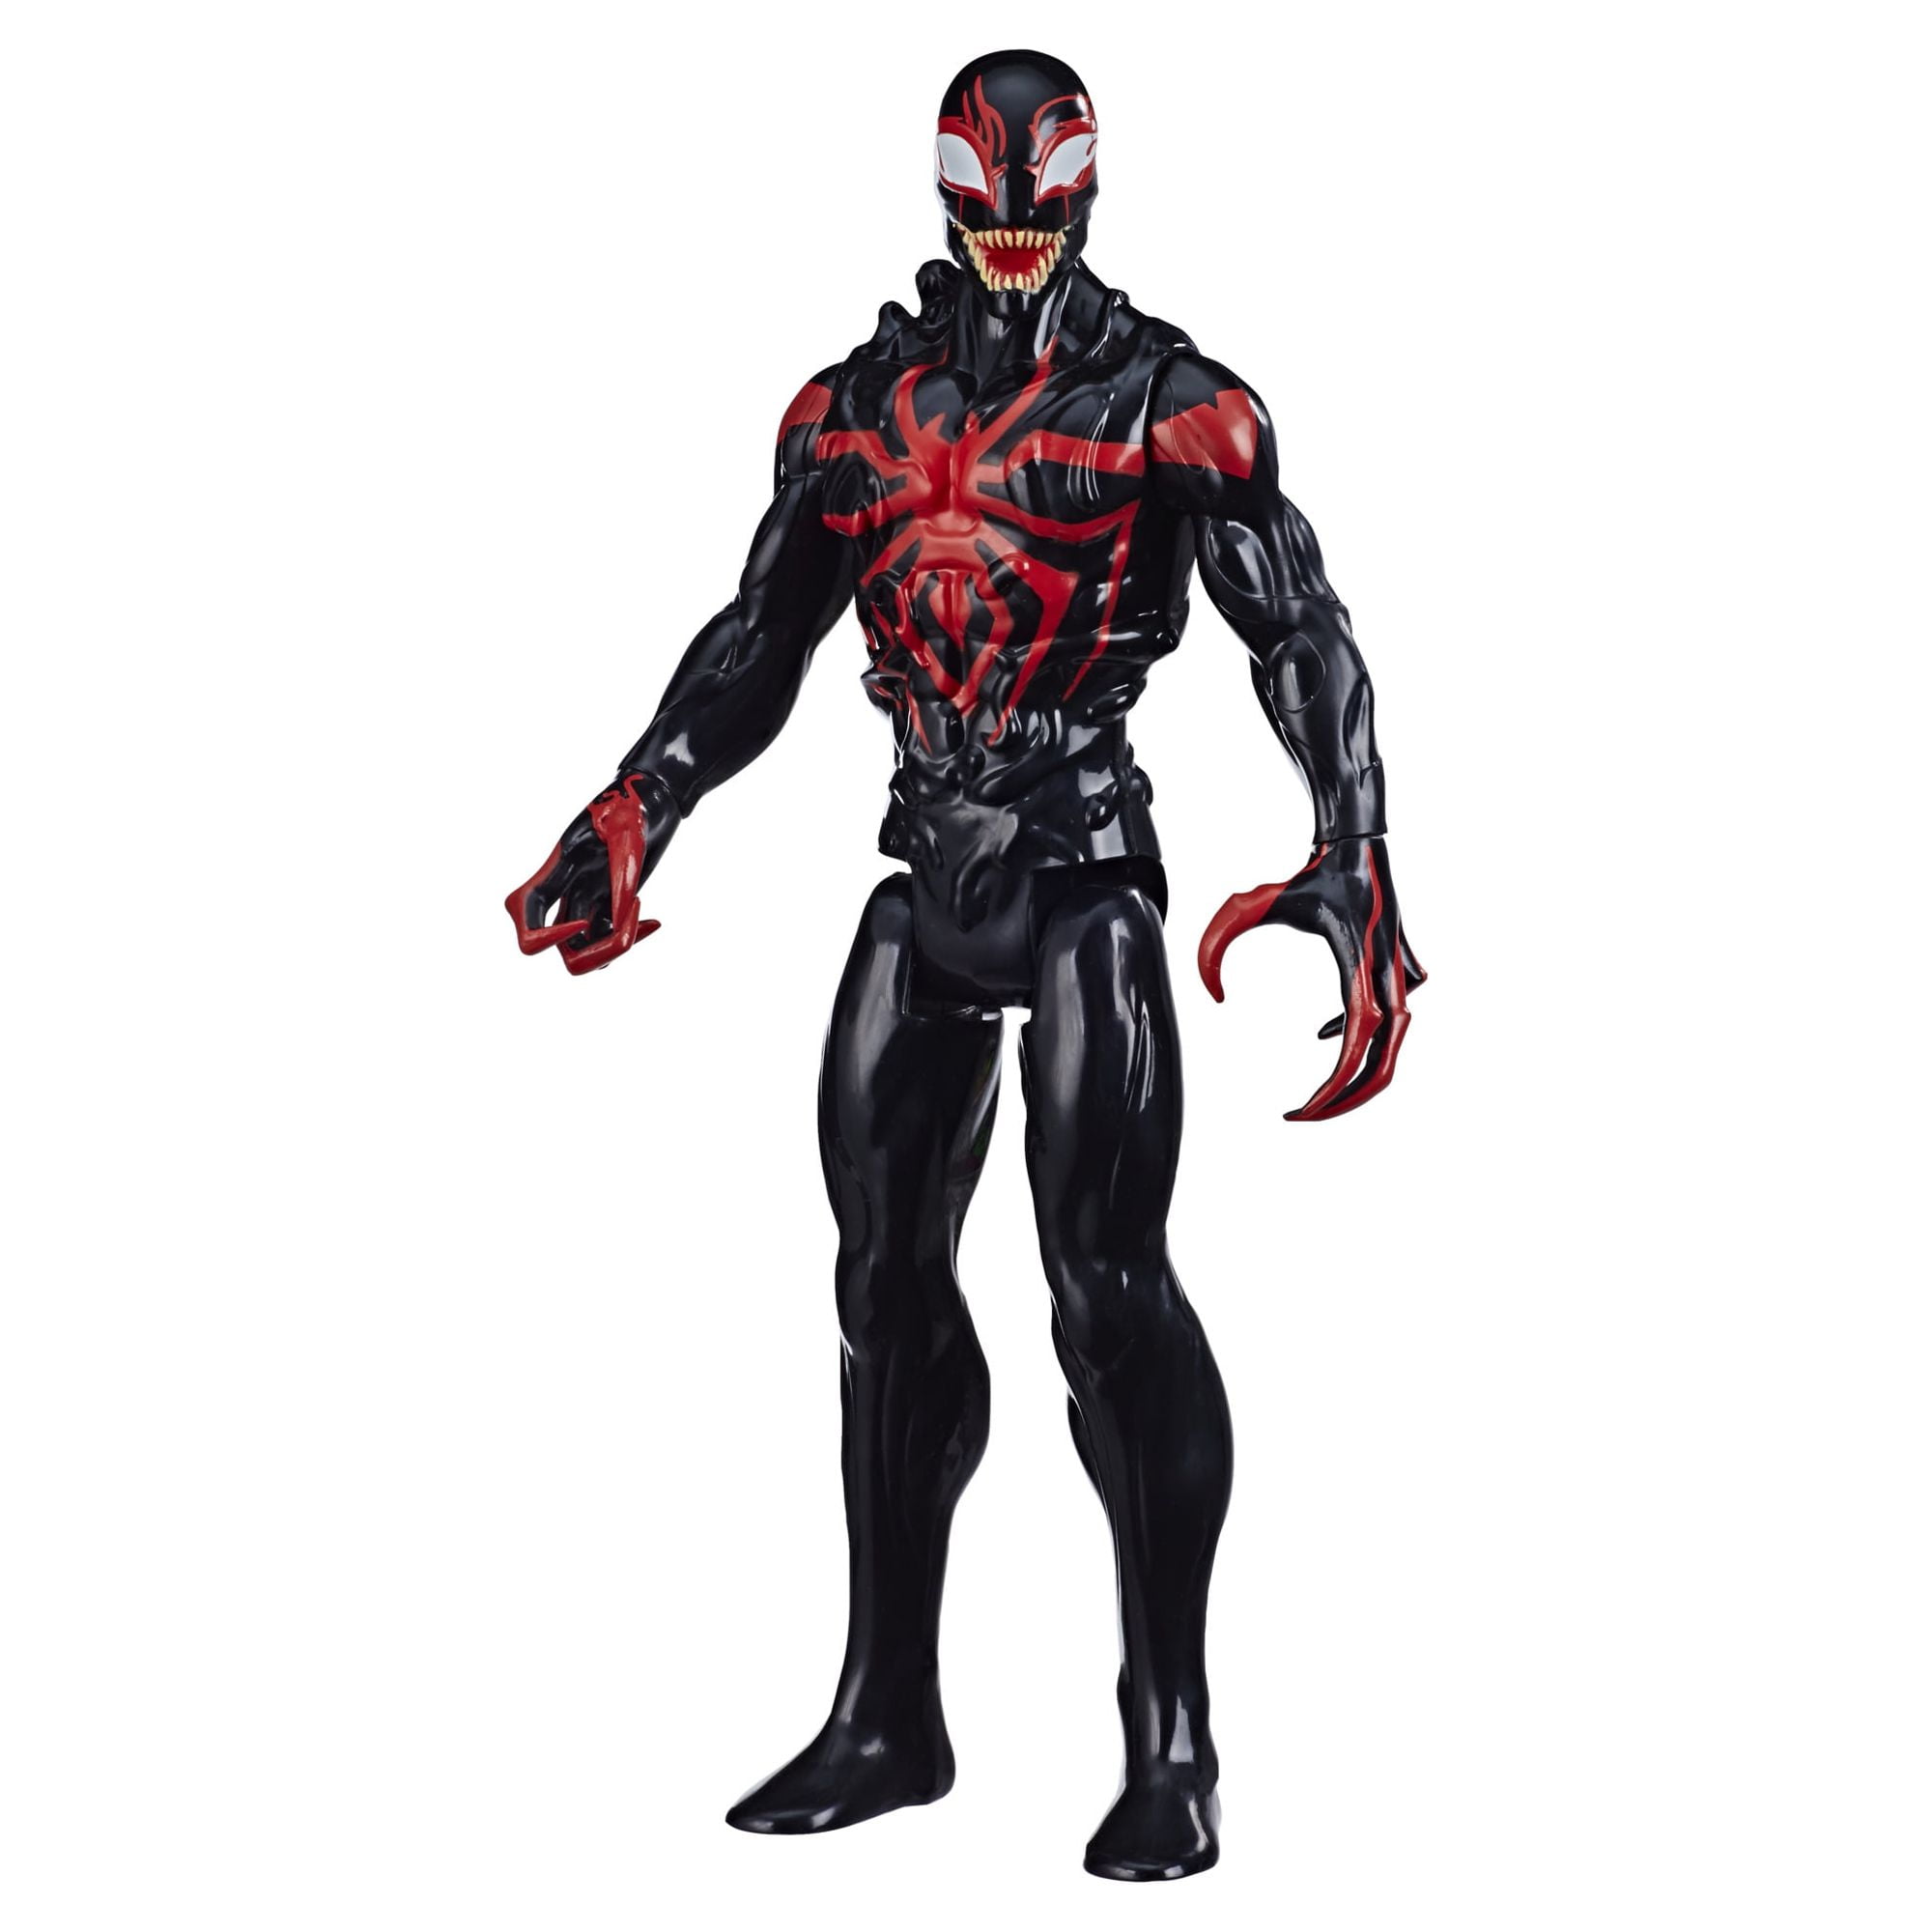 Spider-Man Maximum Venom Titan Hero Miles Morales Action Figure, Ages 4 and  up 